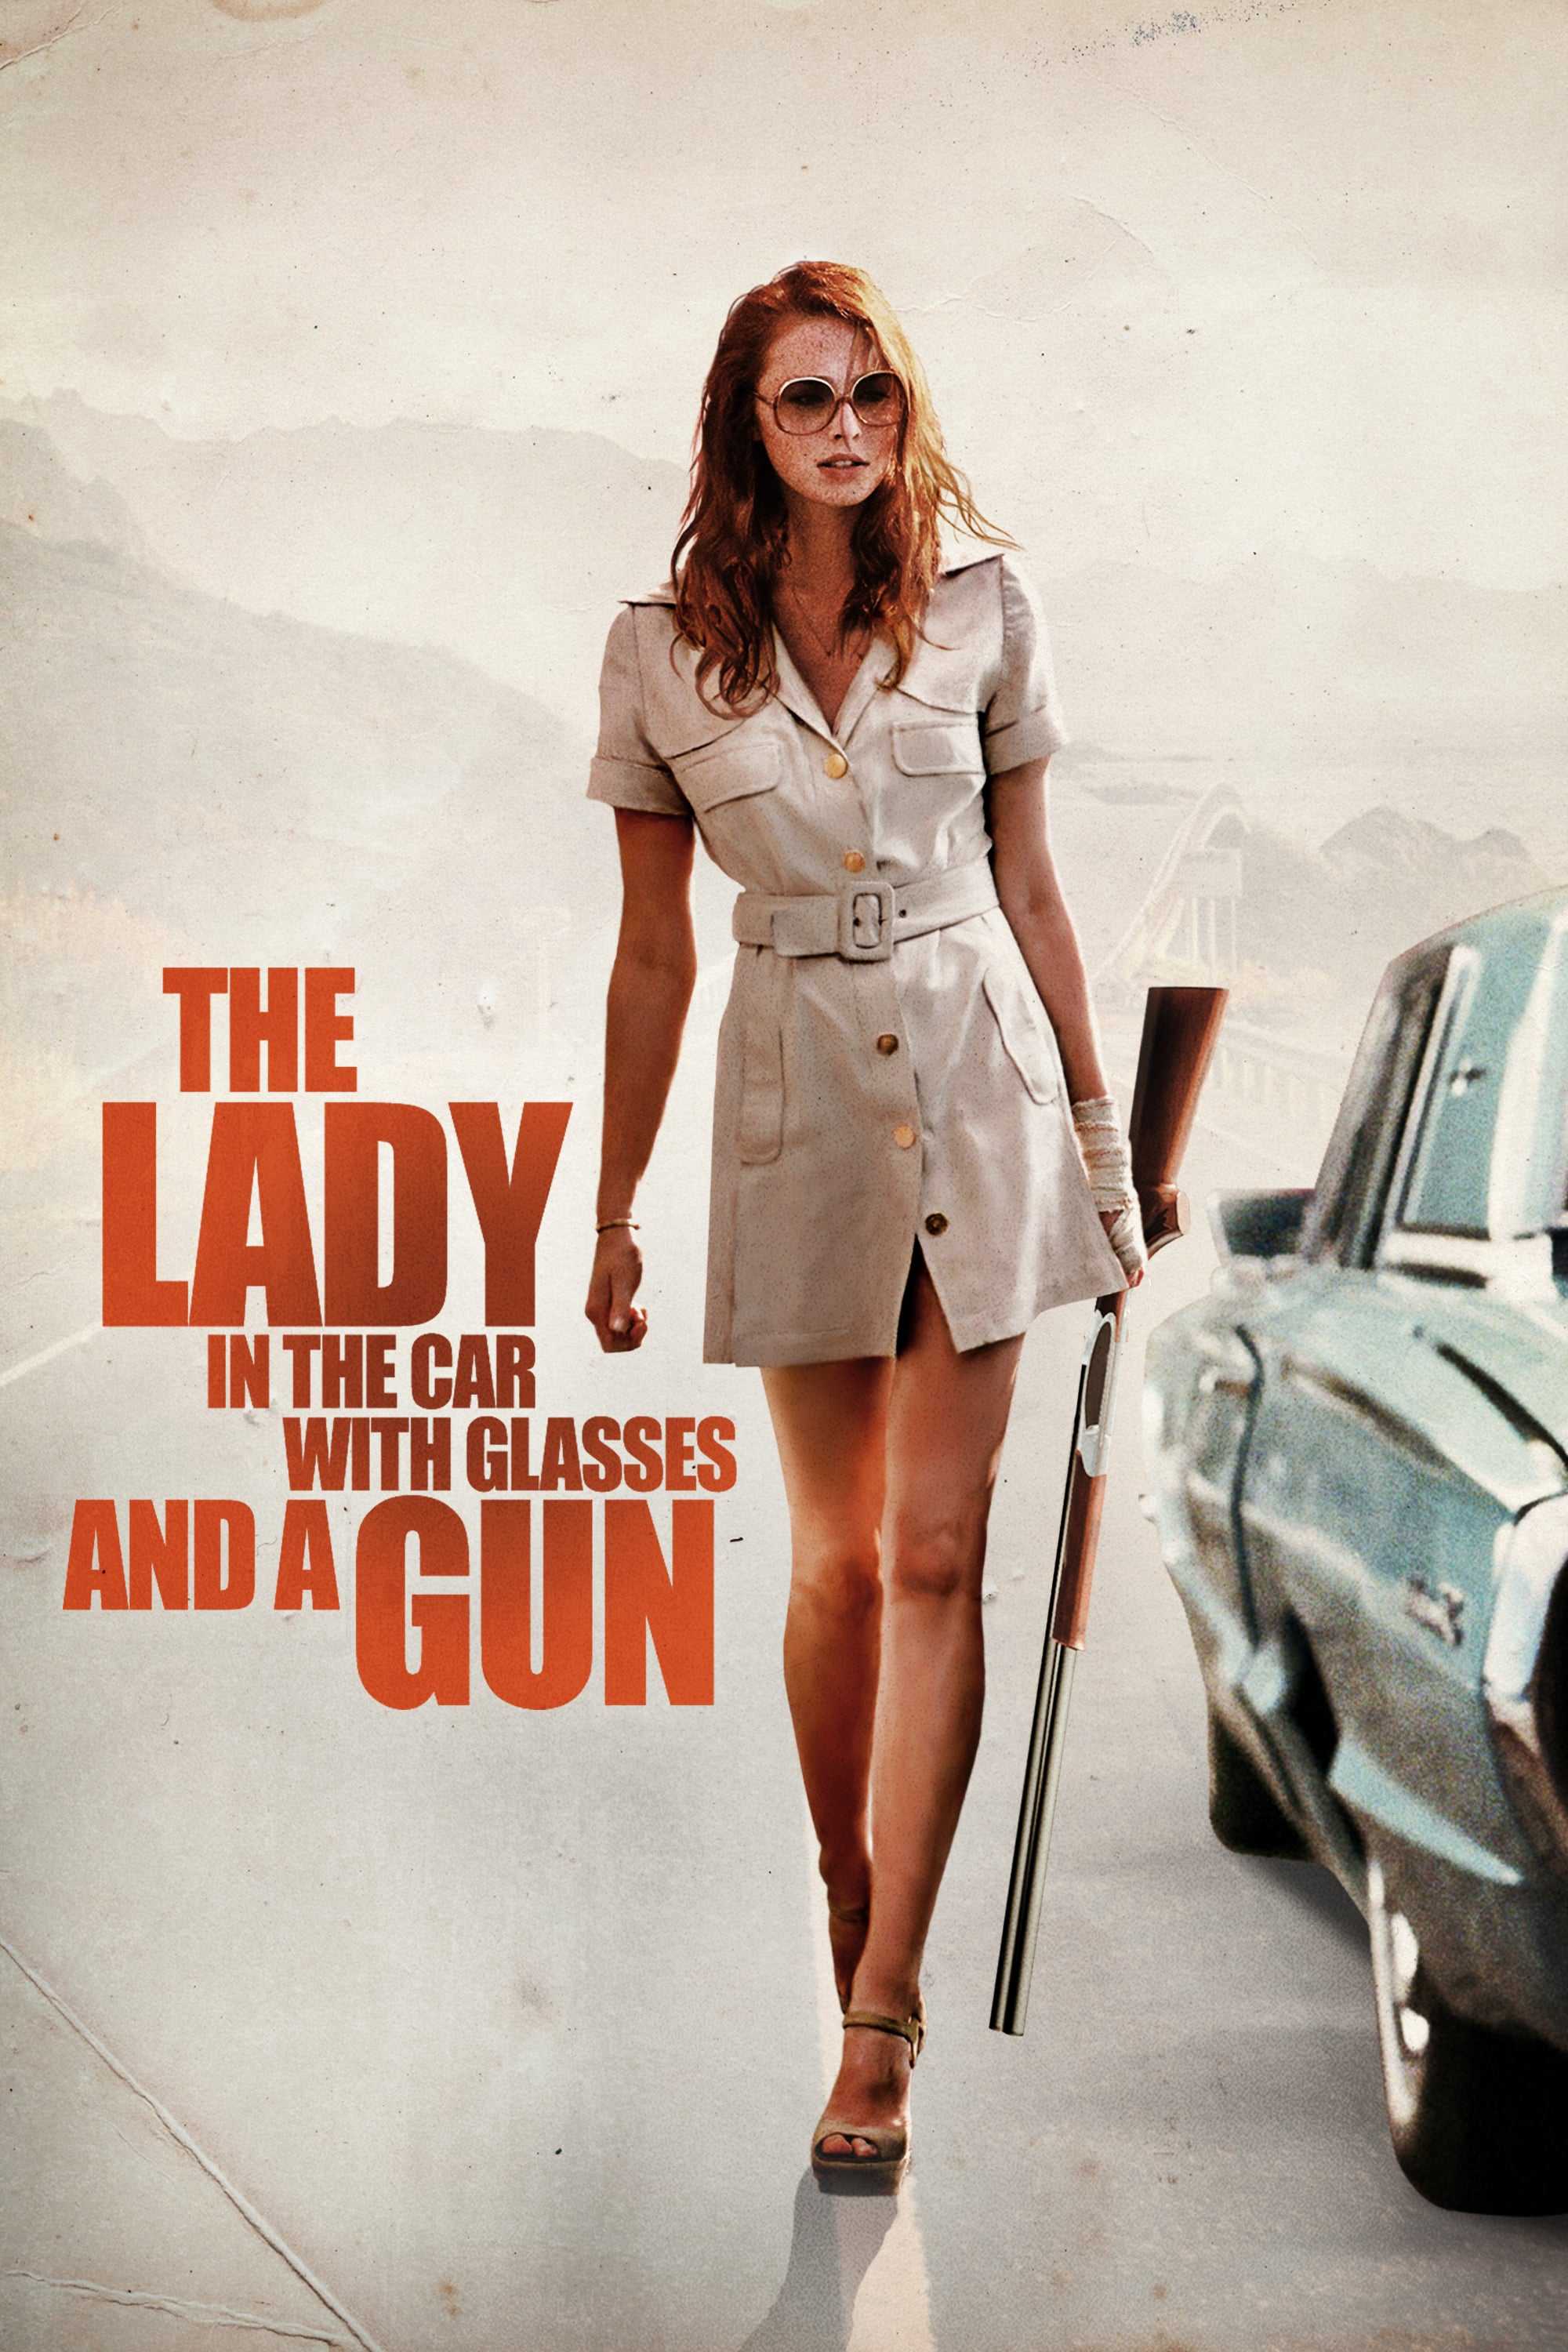 Cô gái trong xe đeo kính với khẩu súng - The lady in the car with glasses and a gun